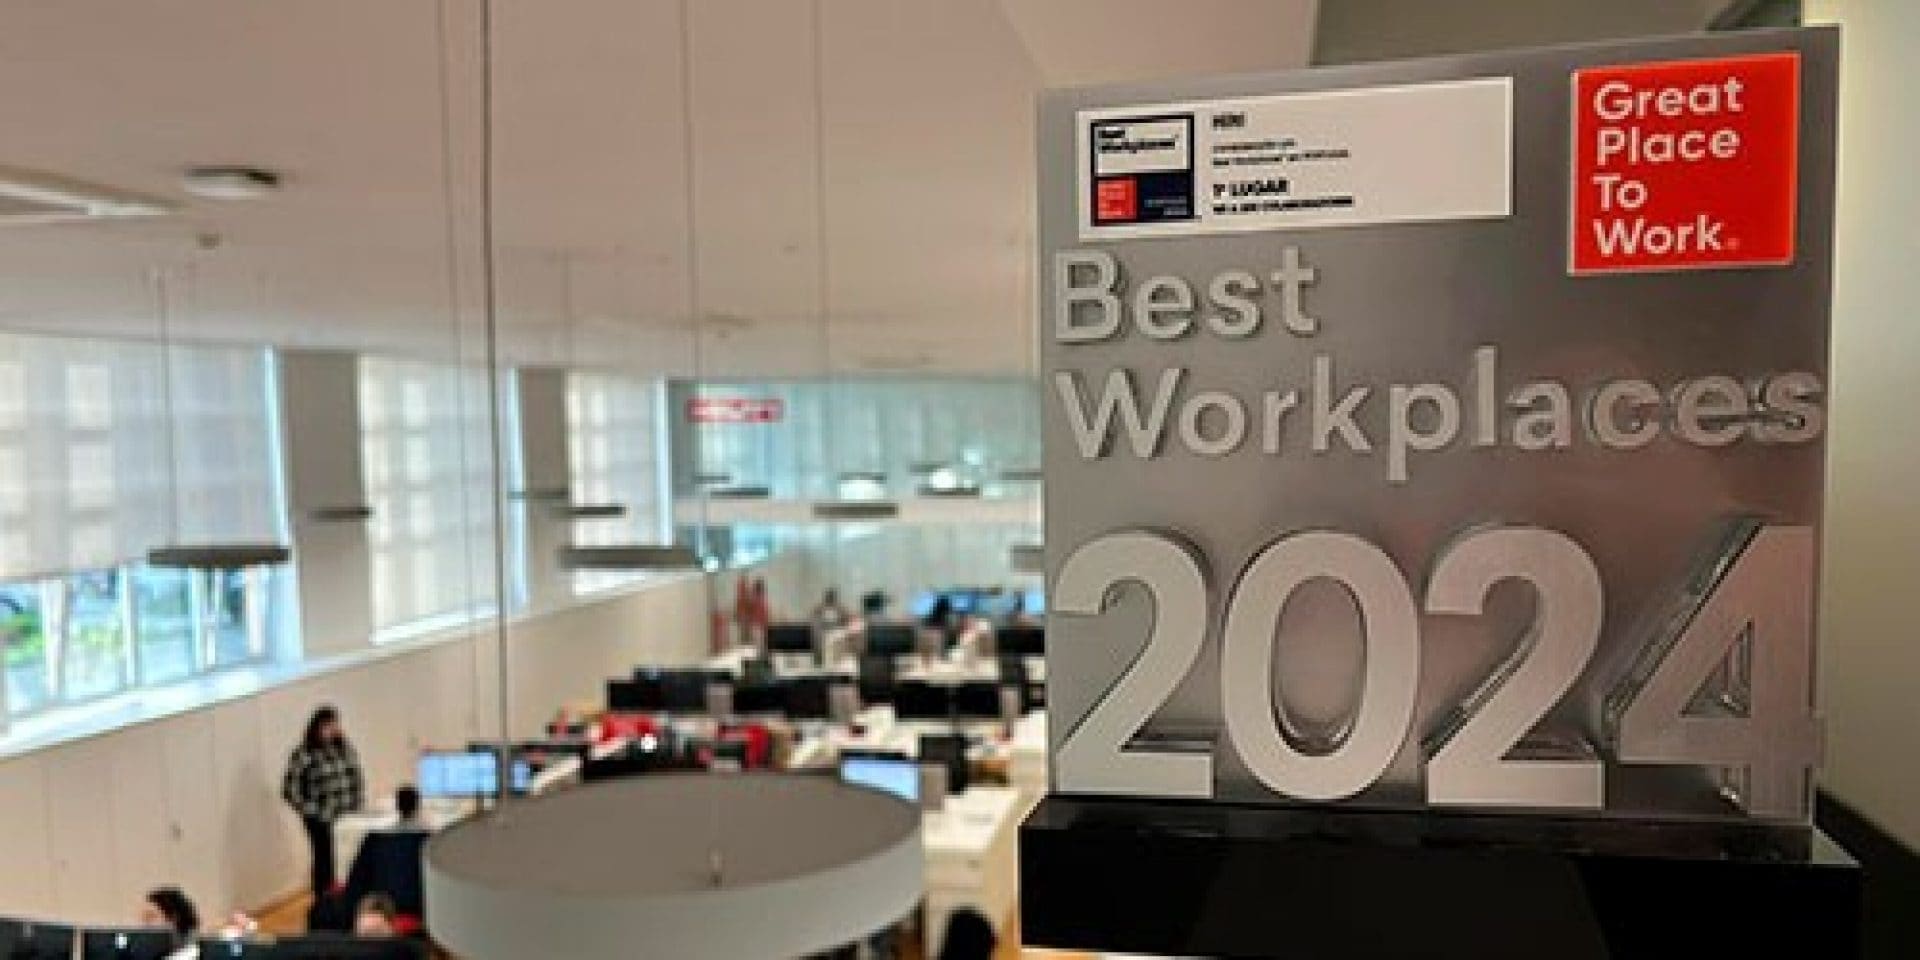 A Hilti Portugal recebeu o prémio de melhor lugar para trabalhar em Portugal, pela Great Place to Work